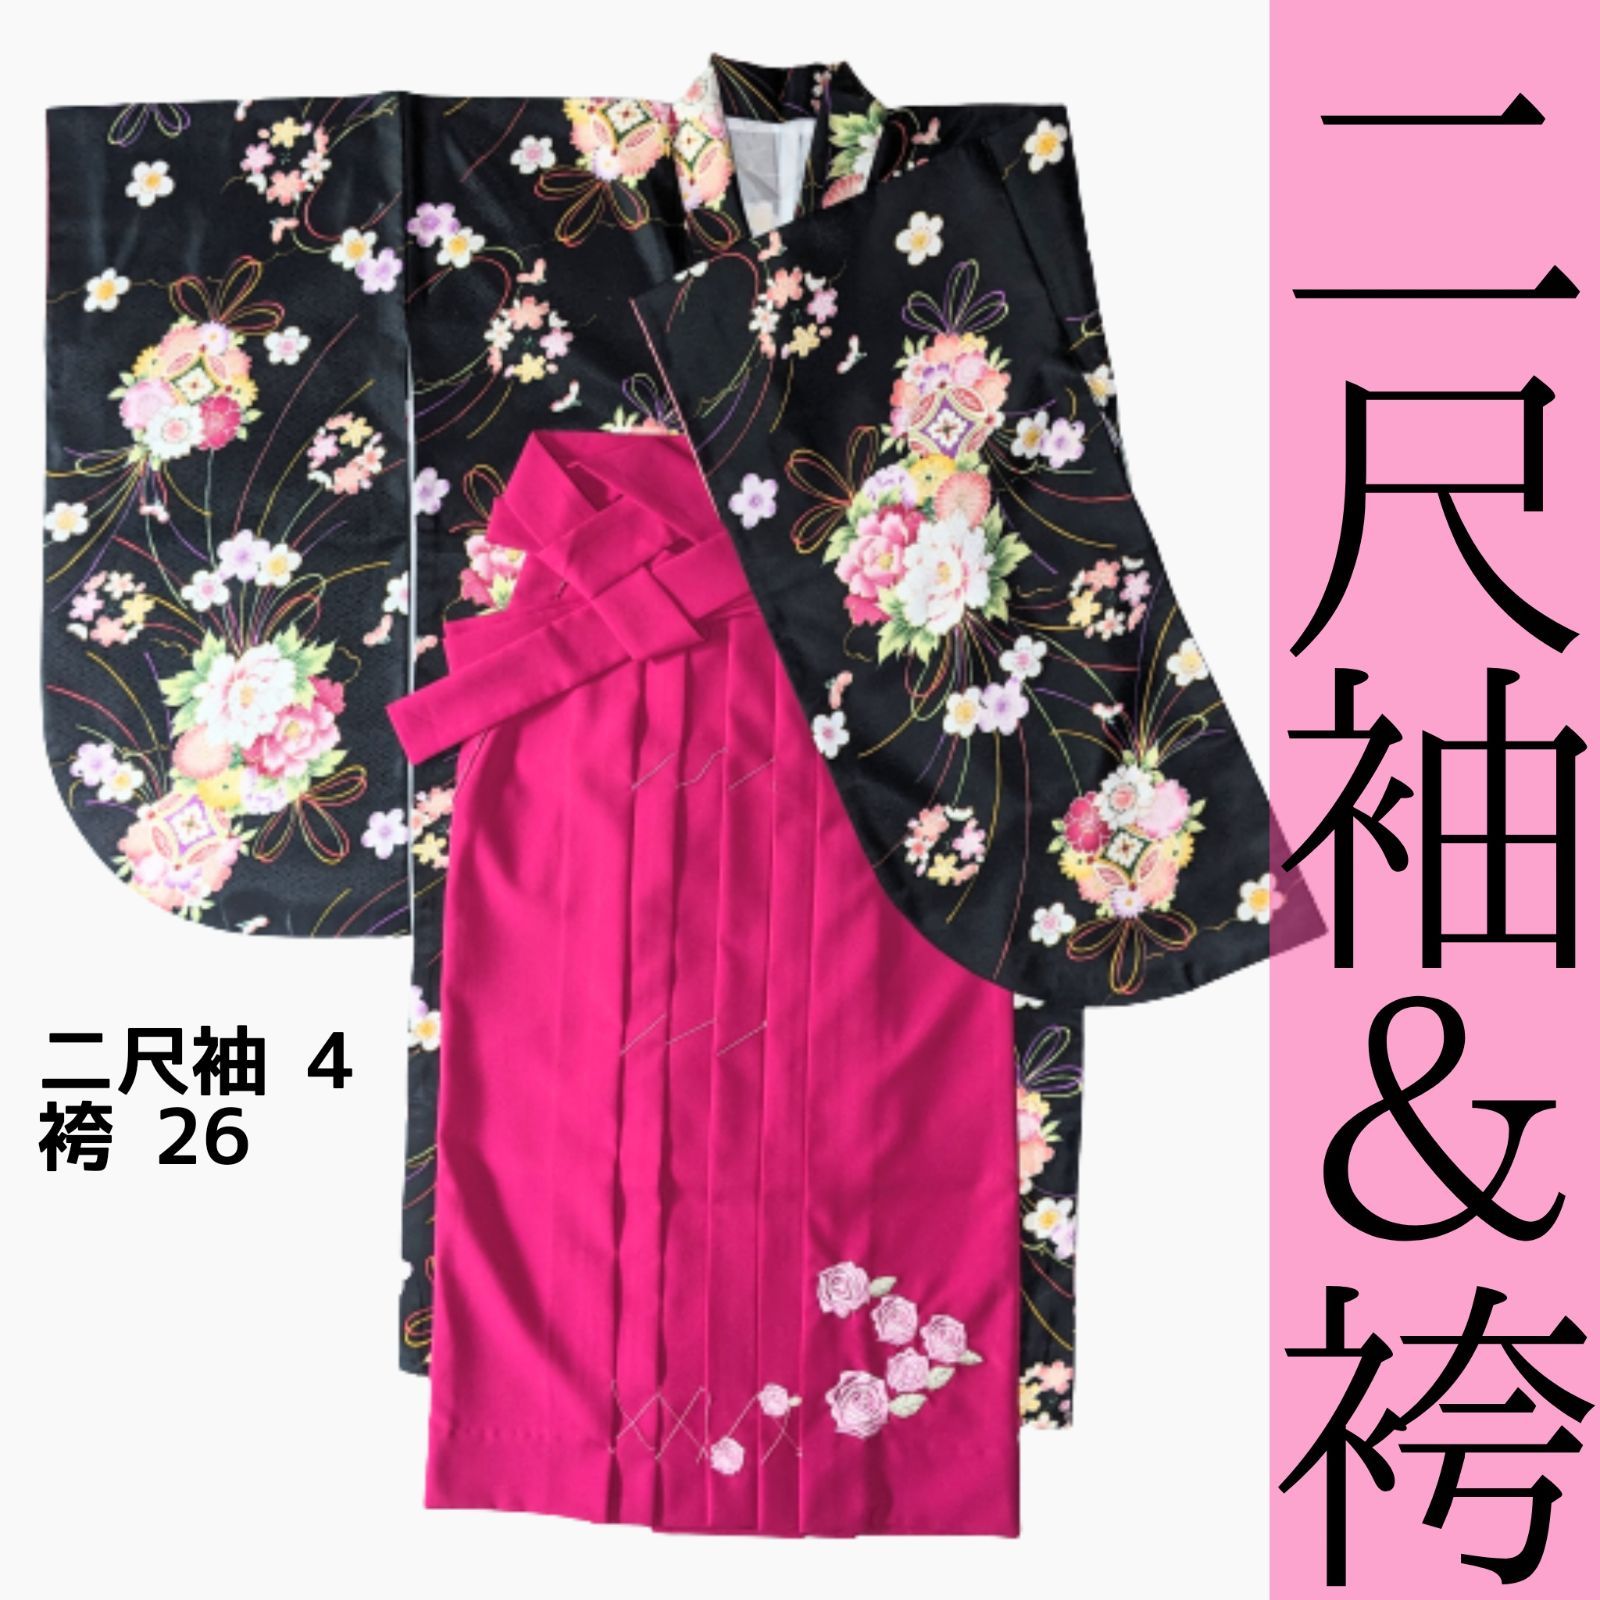 新品 二尺袖着物 袴 4点セット ピンク 花柄 はかま